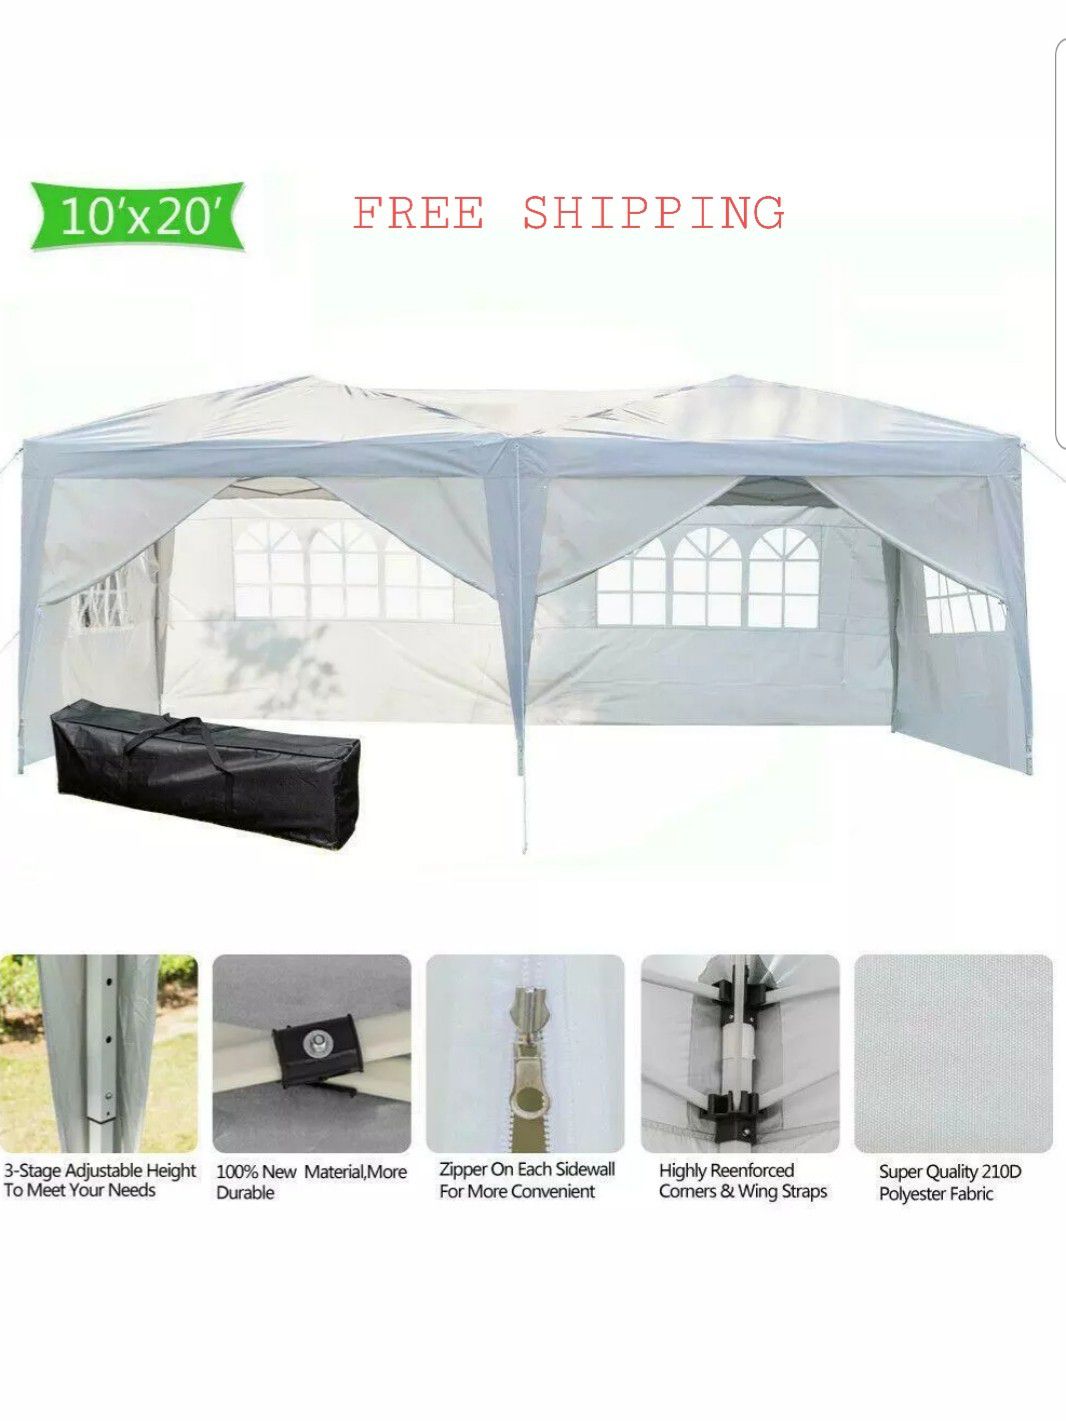 10x20 white canopy gazebo tent backyard weddings pool party removable walls